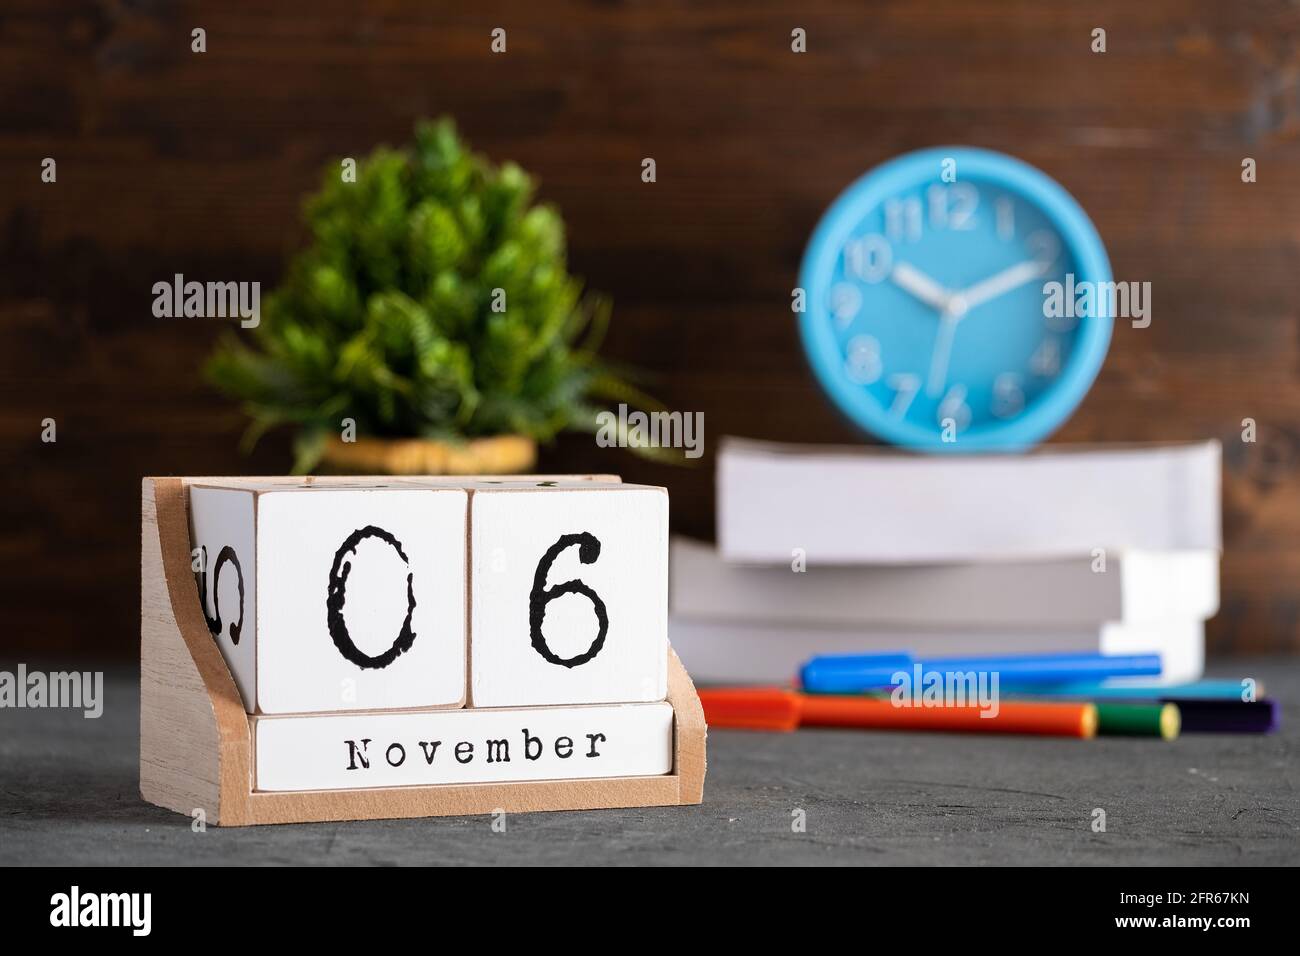 06e novembre. Calendrier cubique en bois de novembre 06 avec objets flous sur fond. Banque D'Images